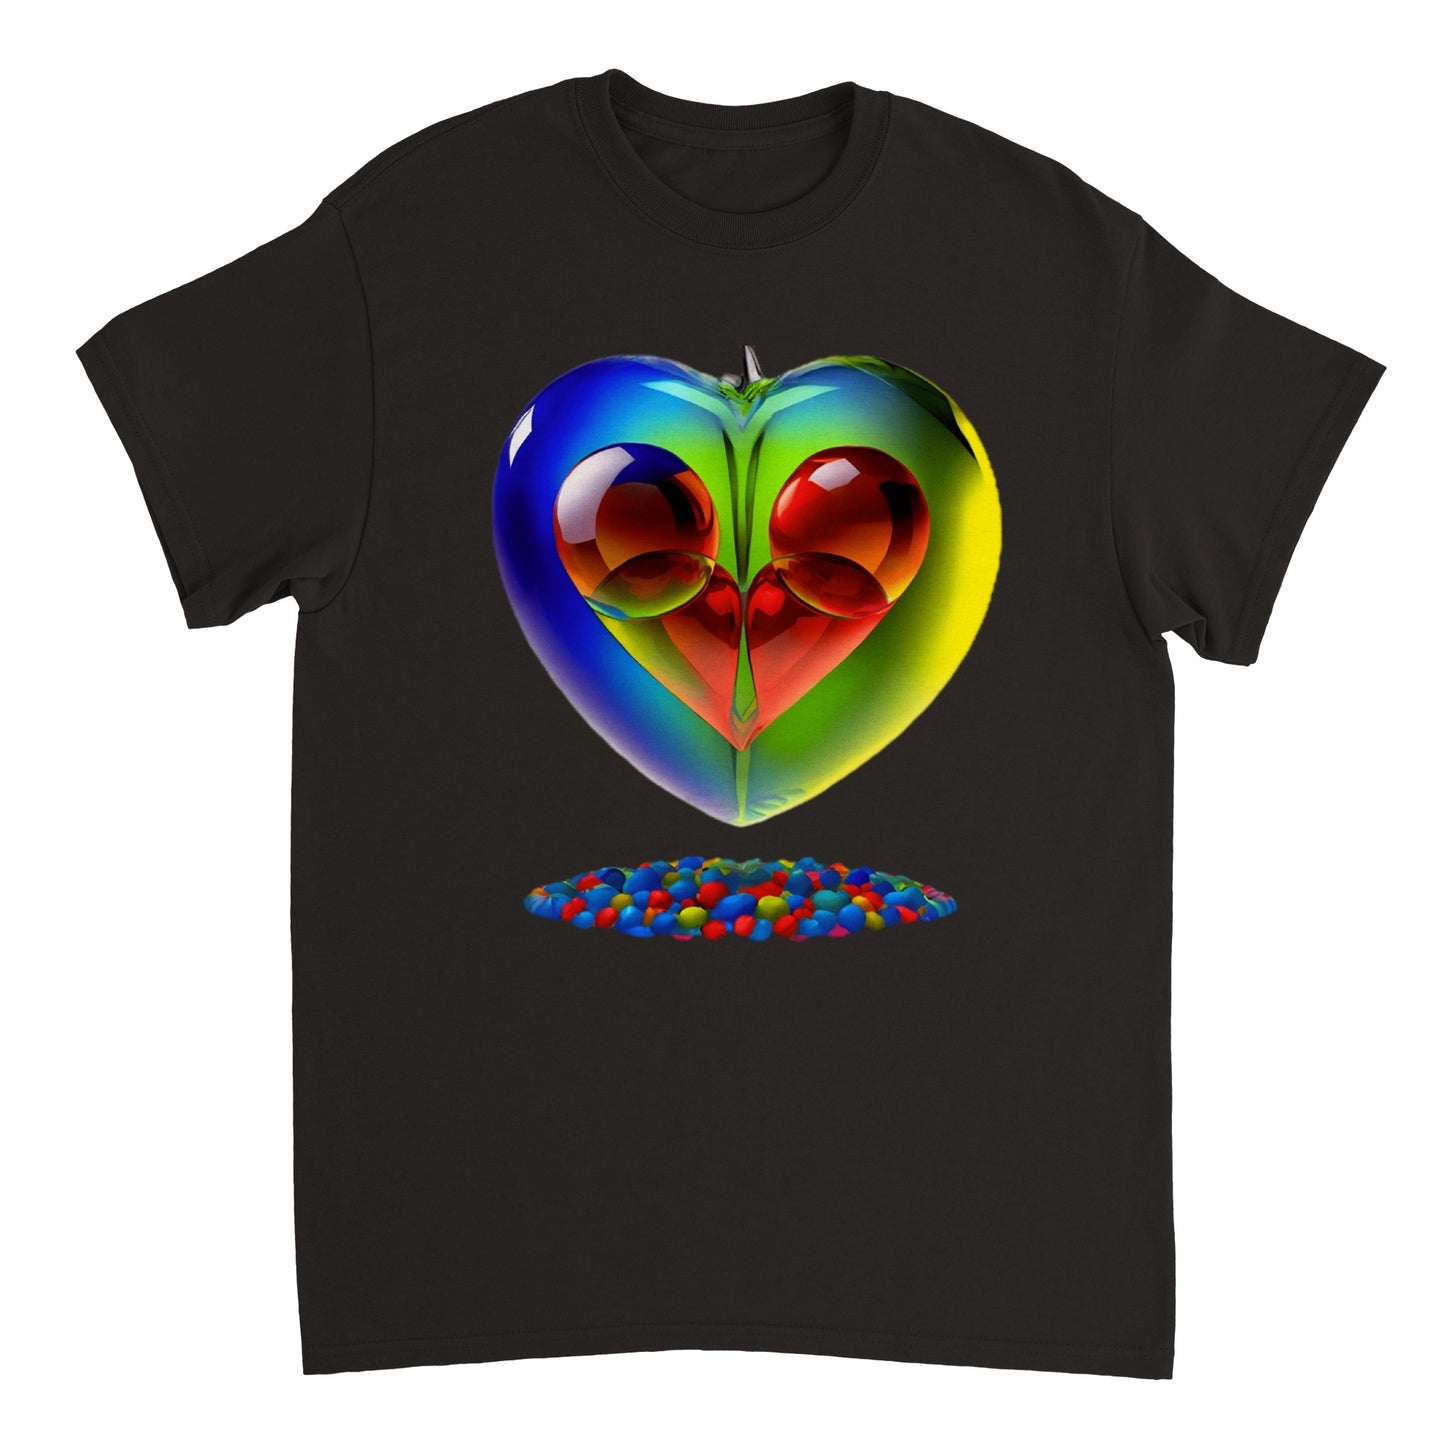 Love Heart - Heavyweight Unisex Crewneck T-shirt 76